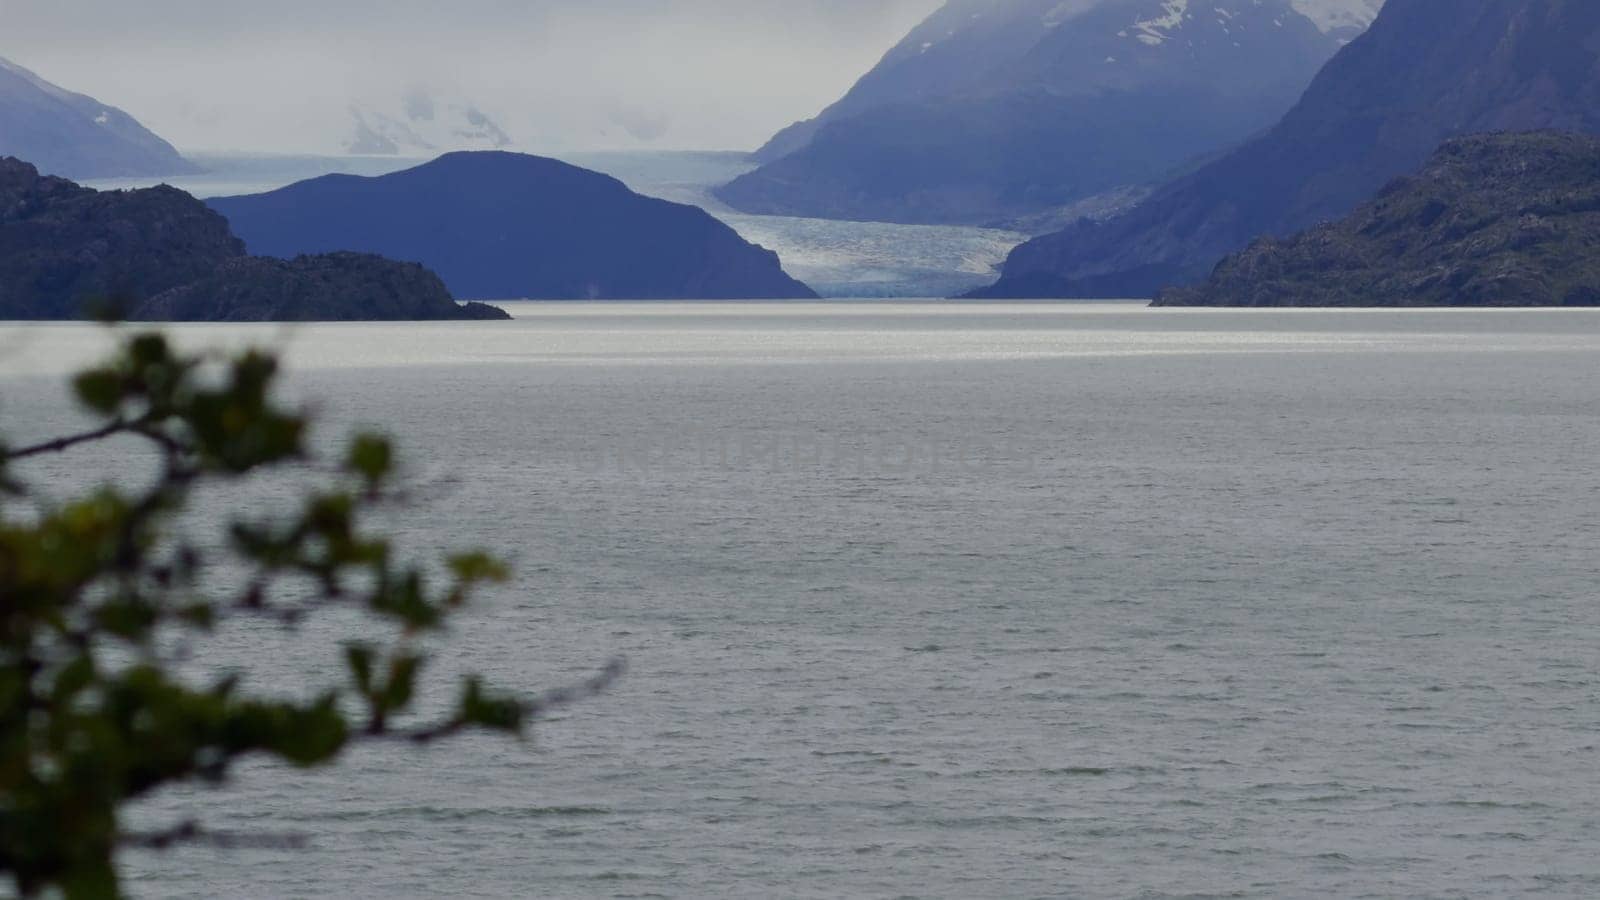 Pristine Lake Grey and Glacier Grey in Patagonian Summer by FerradalFCG